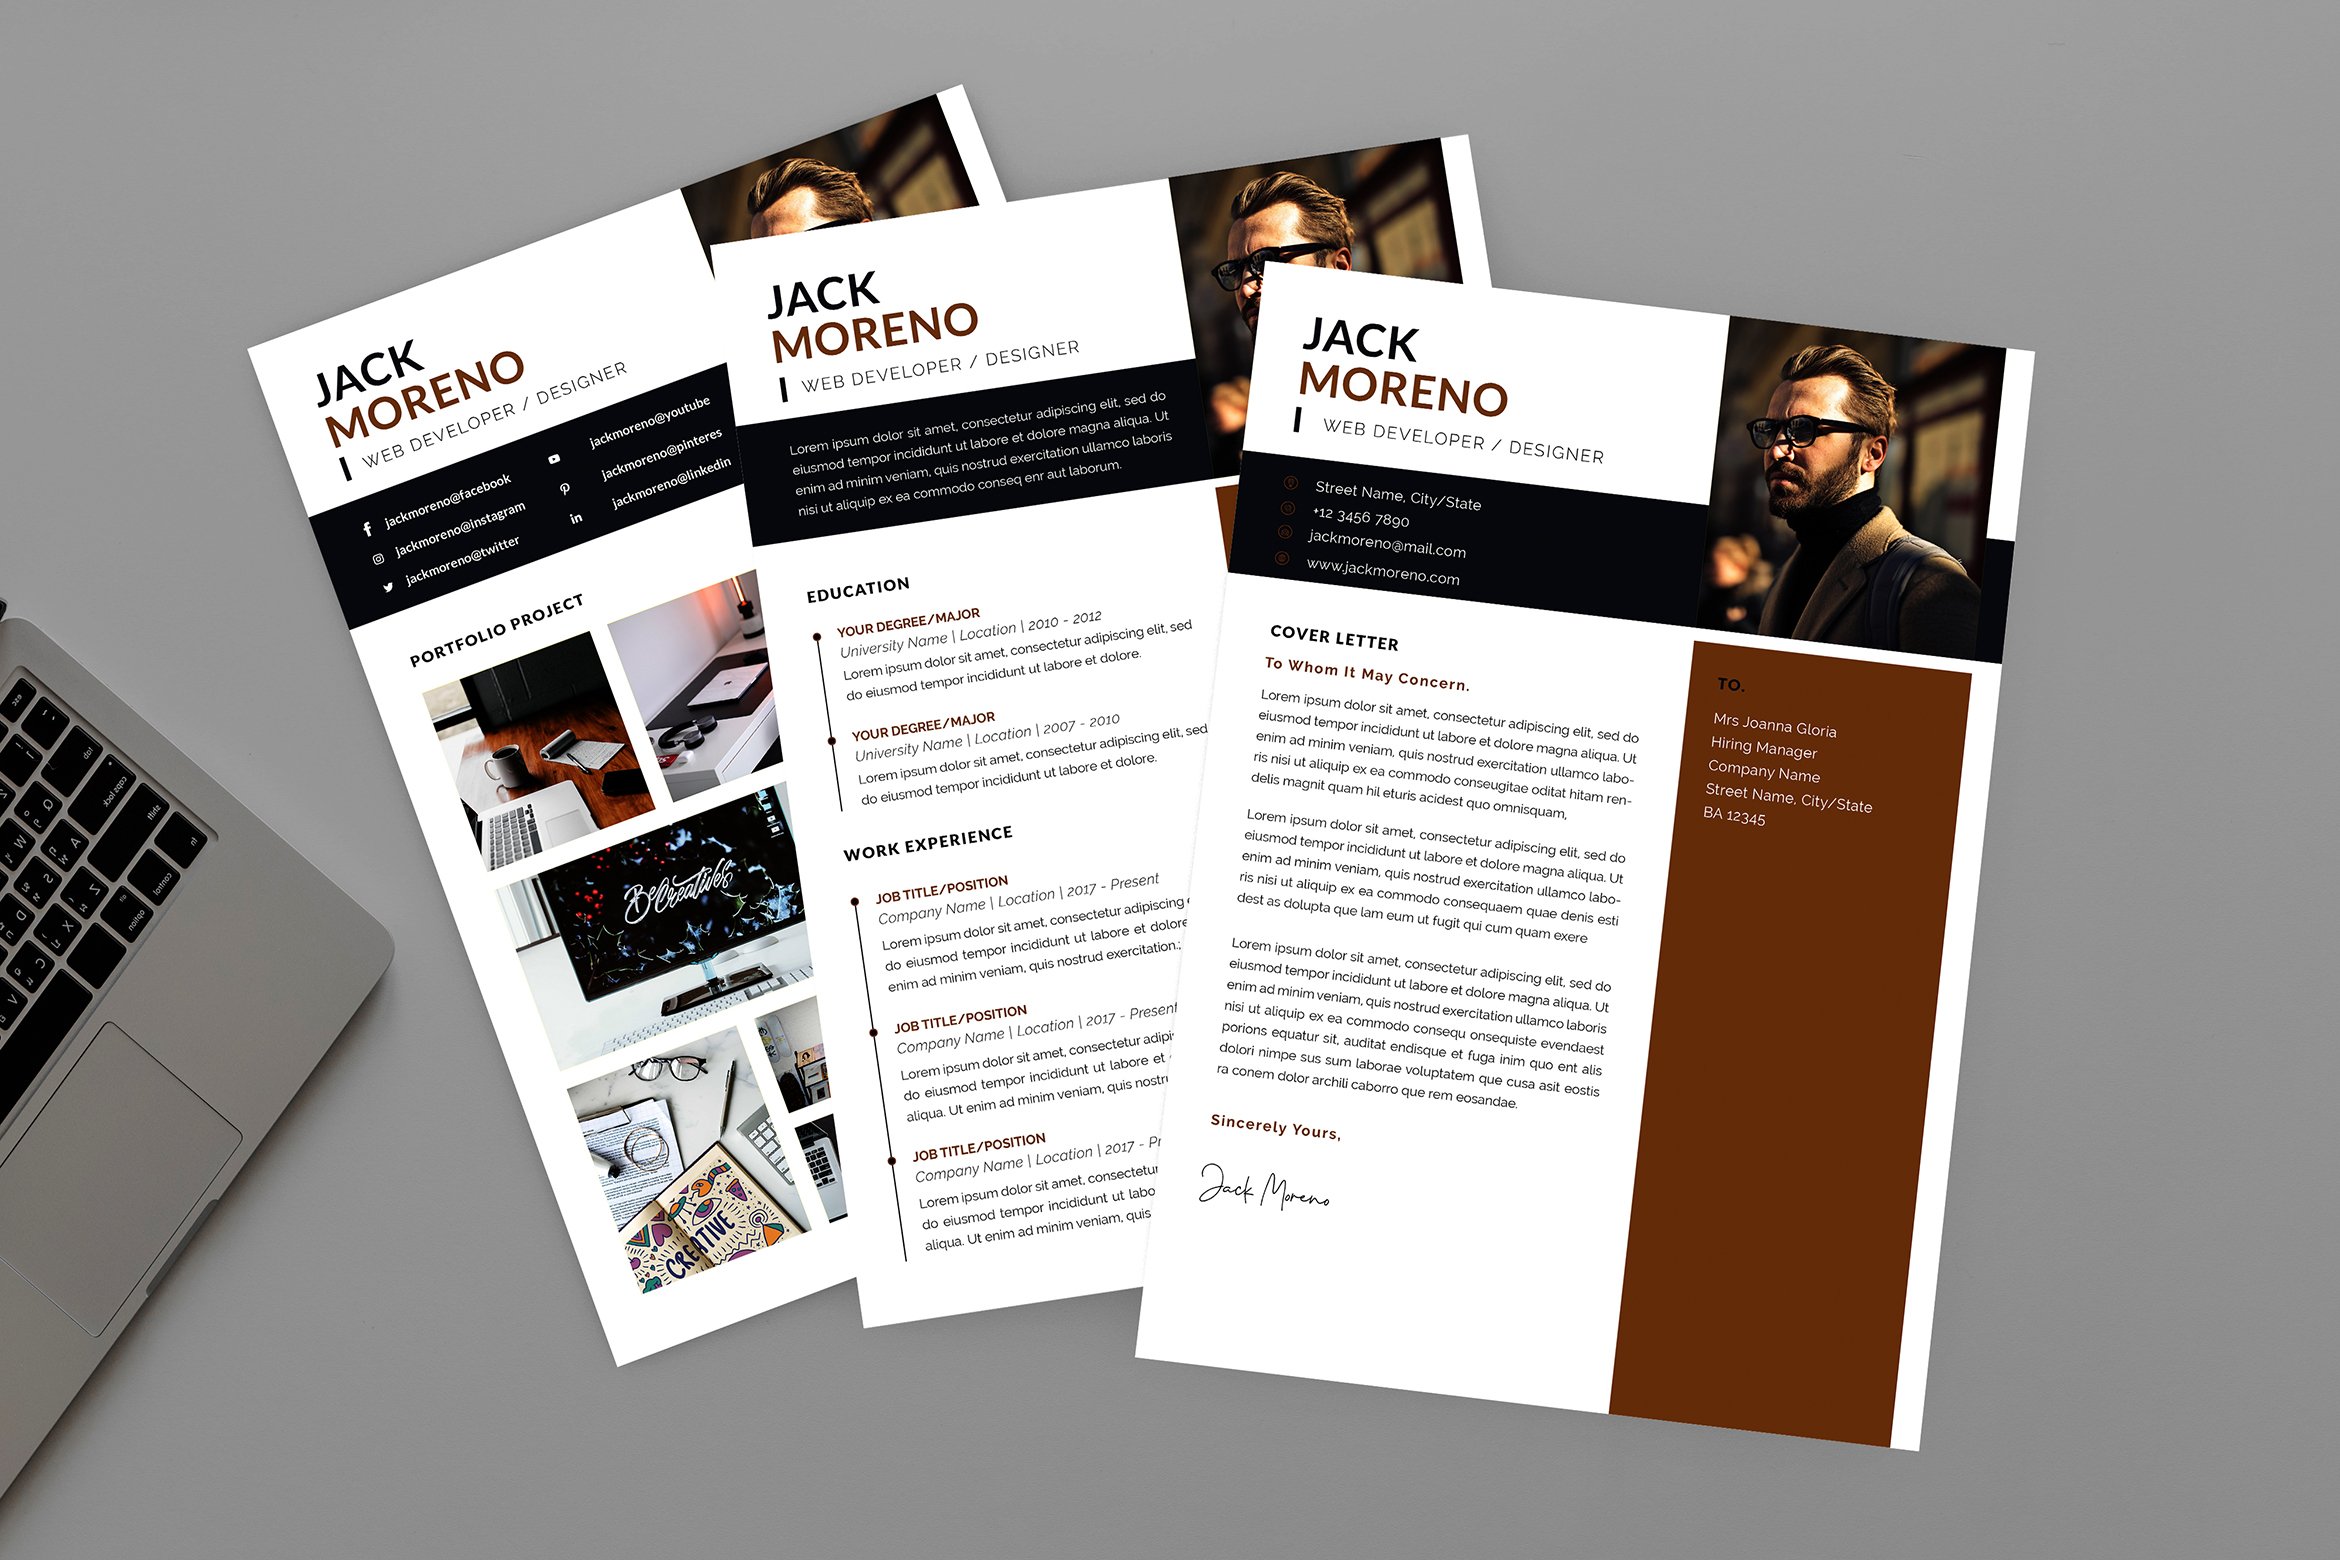 Jack Developer Resume Designer cover image.